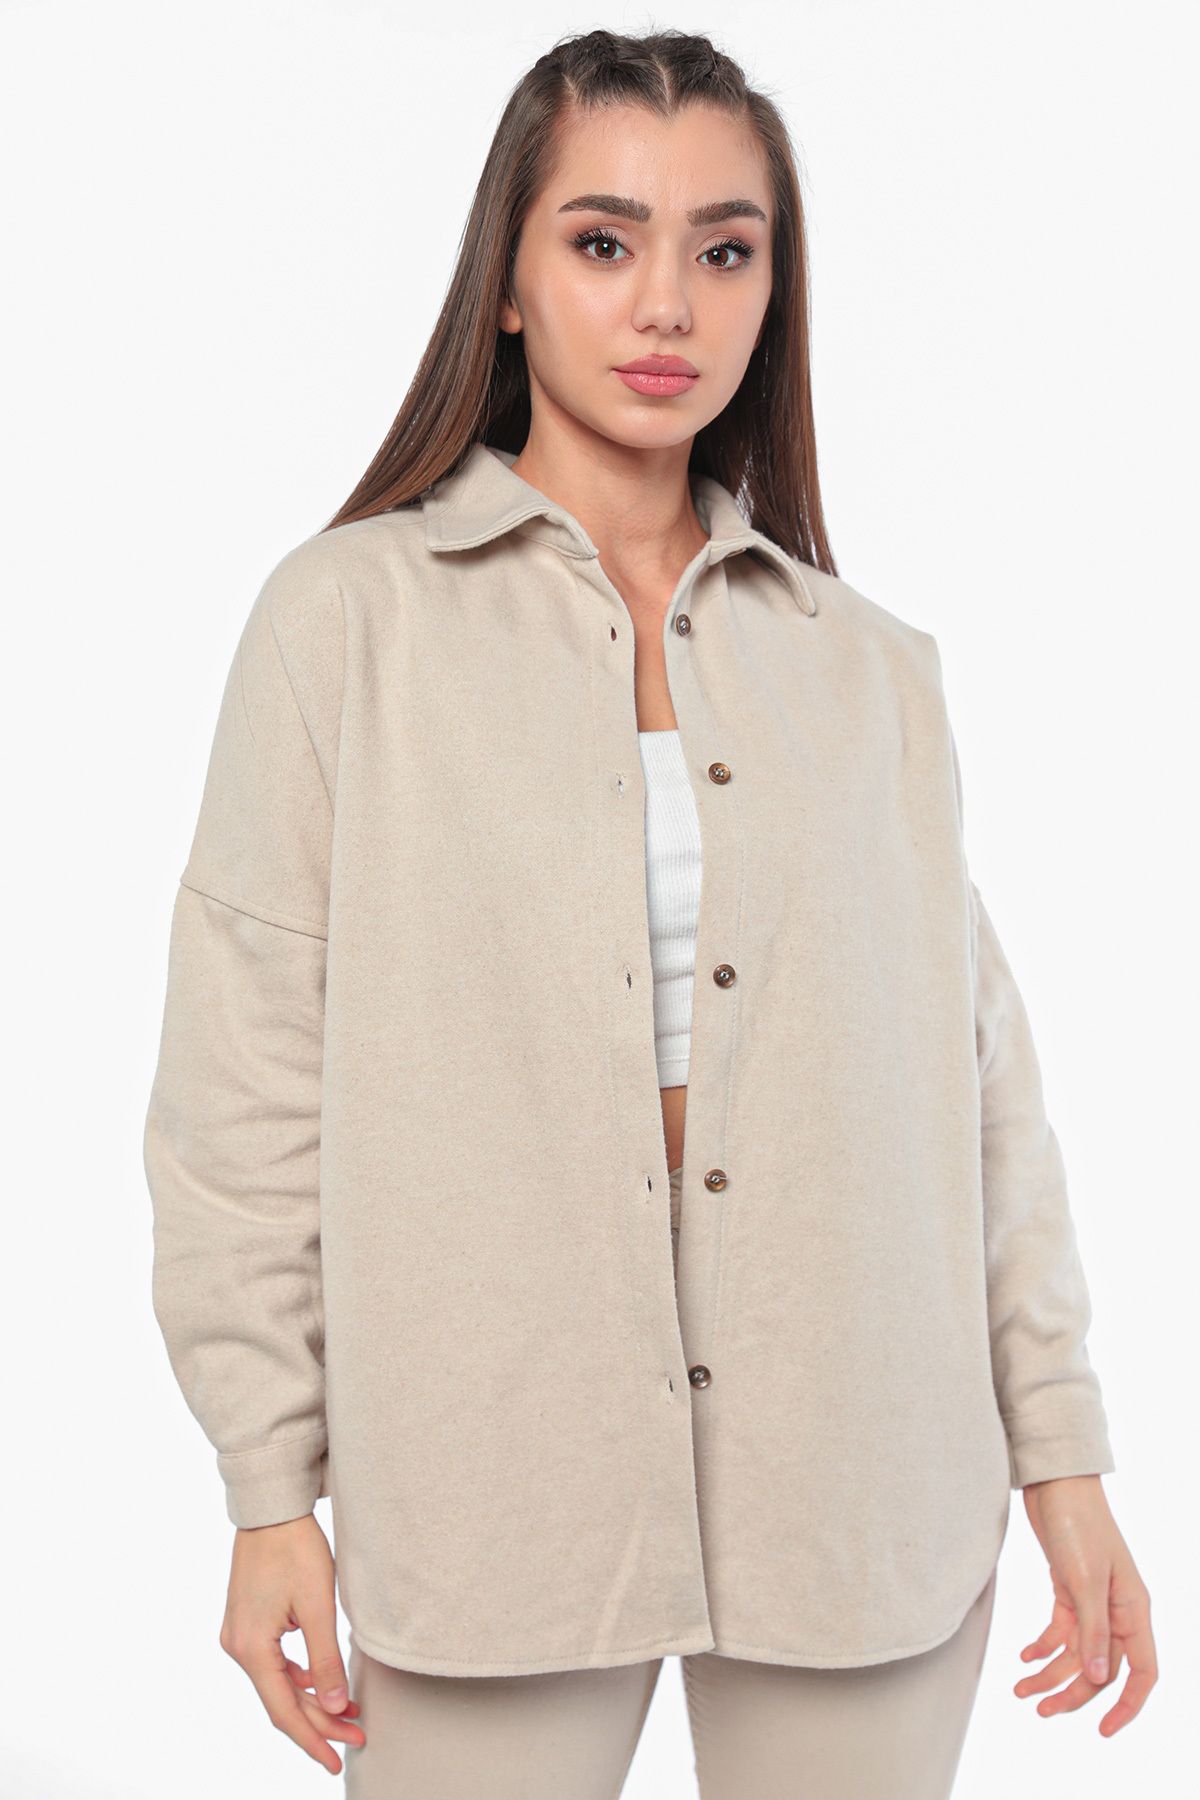 Julude Taş Kışlık Kadın Sırt Geometrik Desenli Kaşe Ceket Gömlek